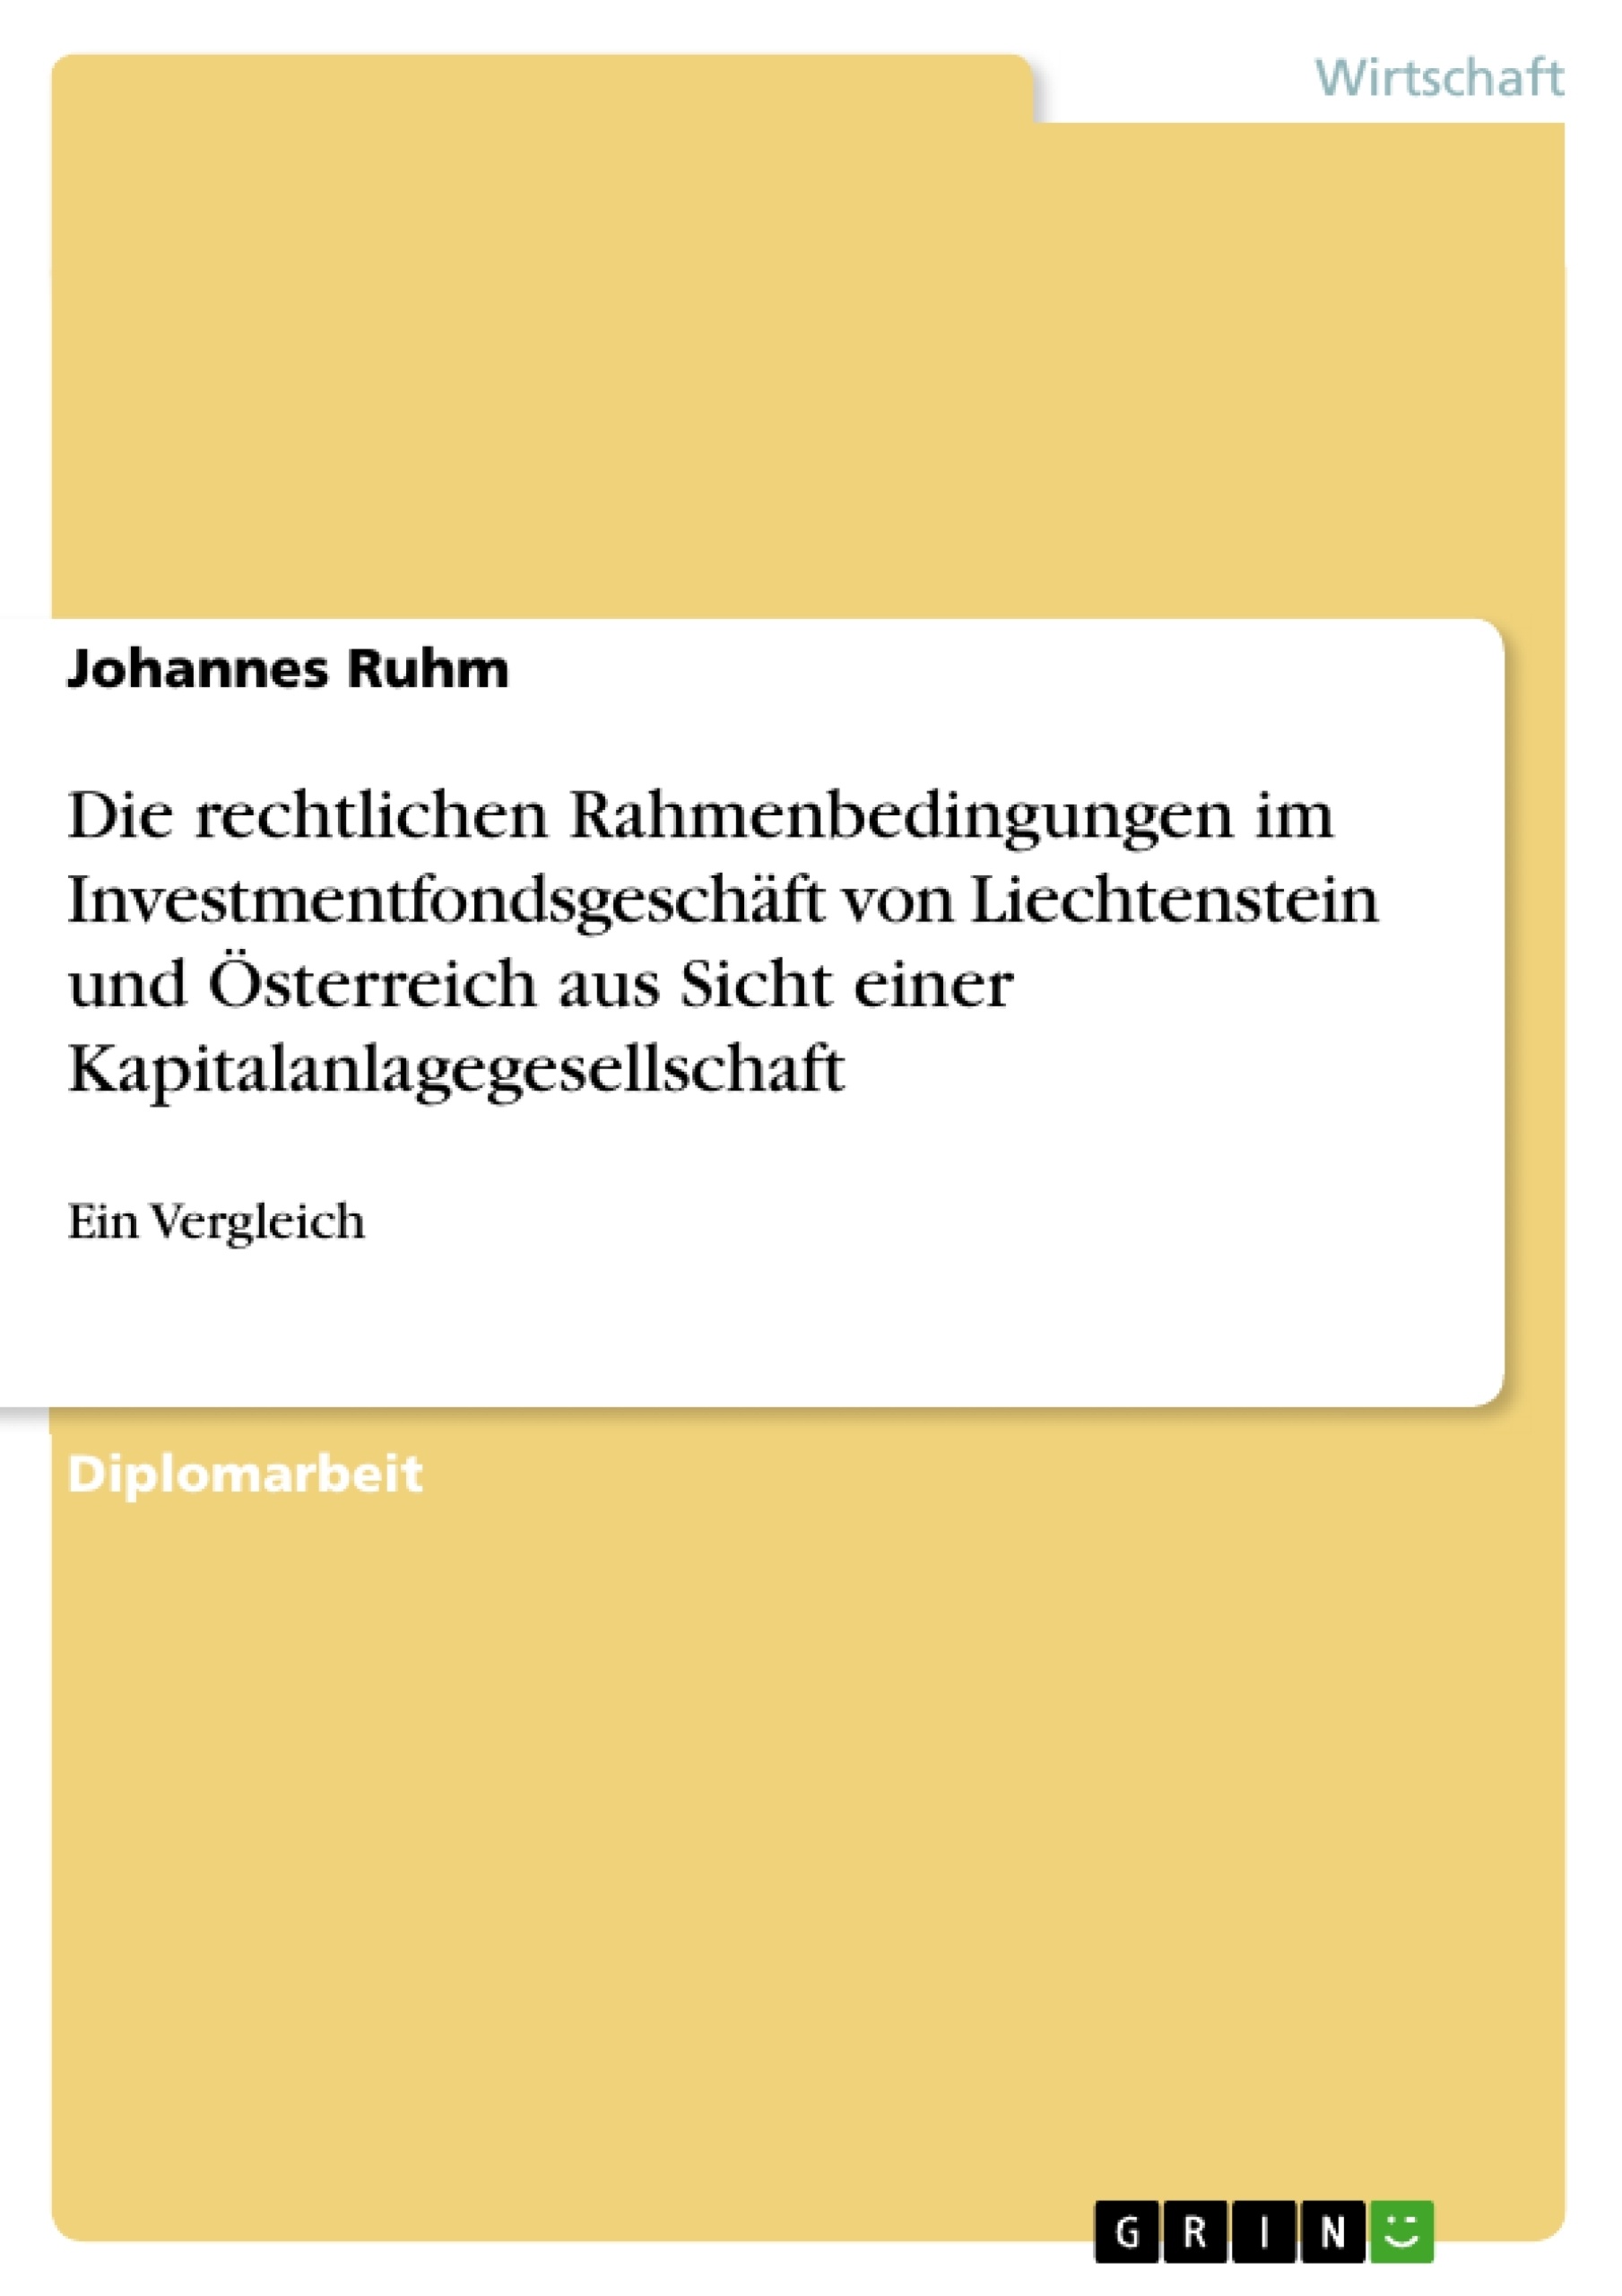 Titre: Die rechtlichen Rahmenbedingungen im Investmentfondsgeschäft von Liechtenstein und Österreich aus Sicht einer Kapitalanlagegesellschaft